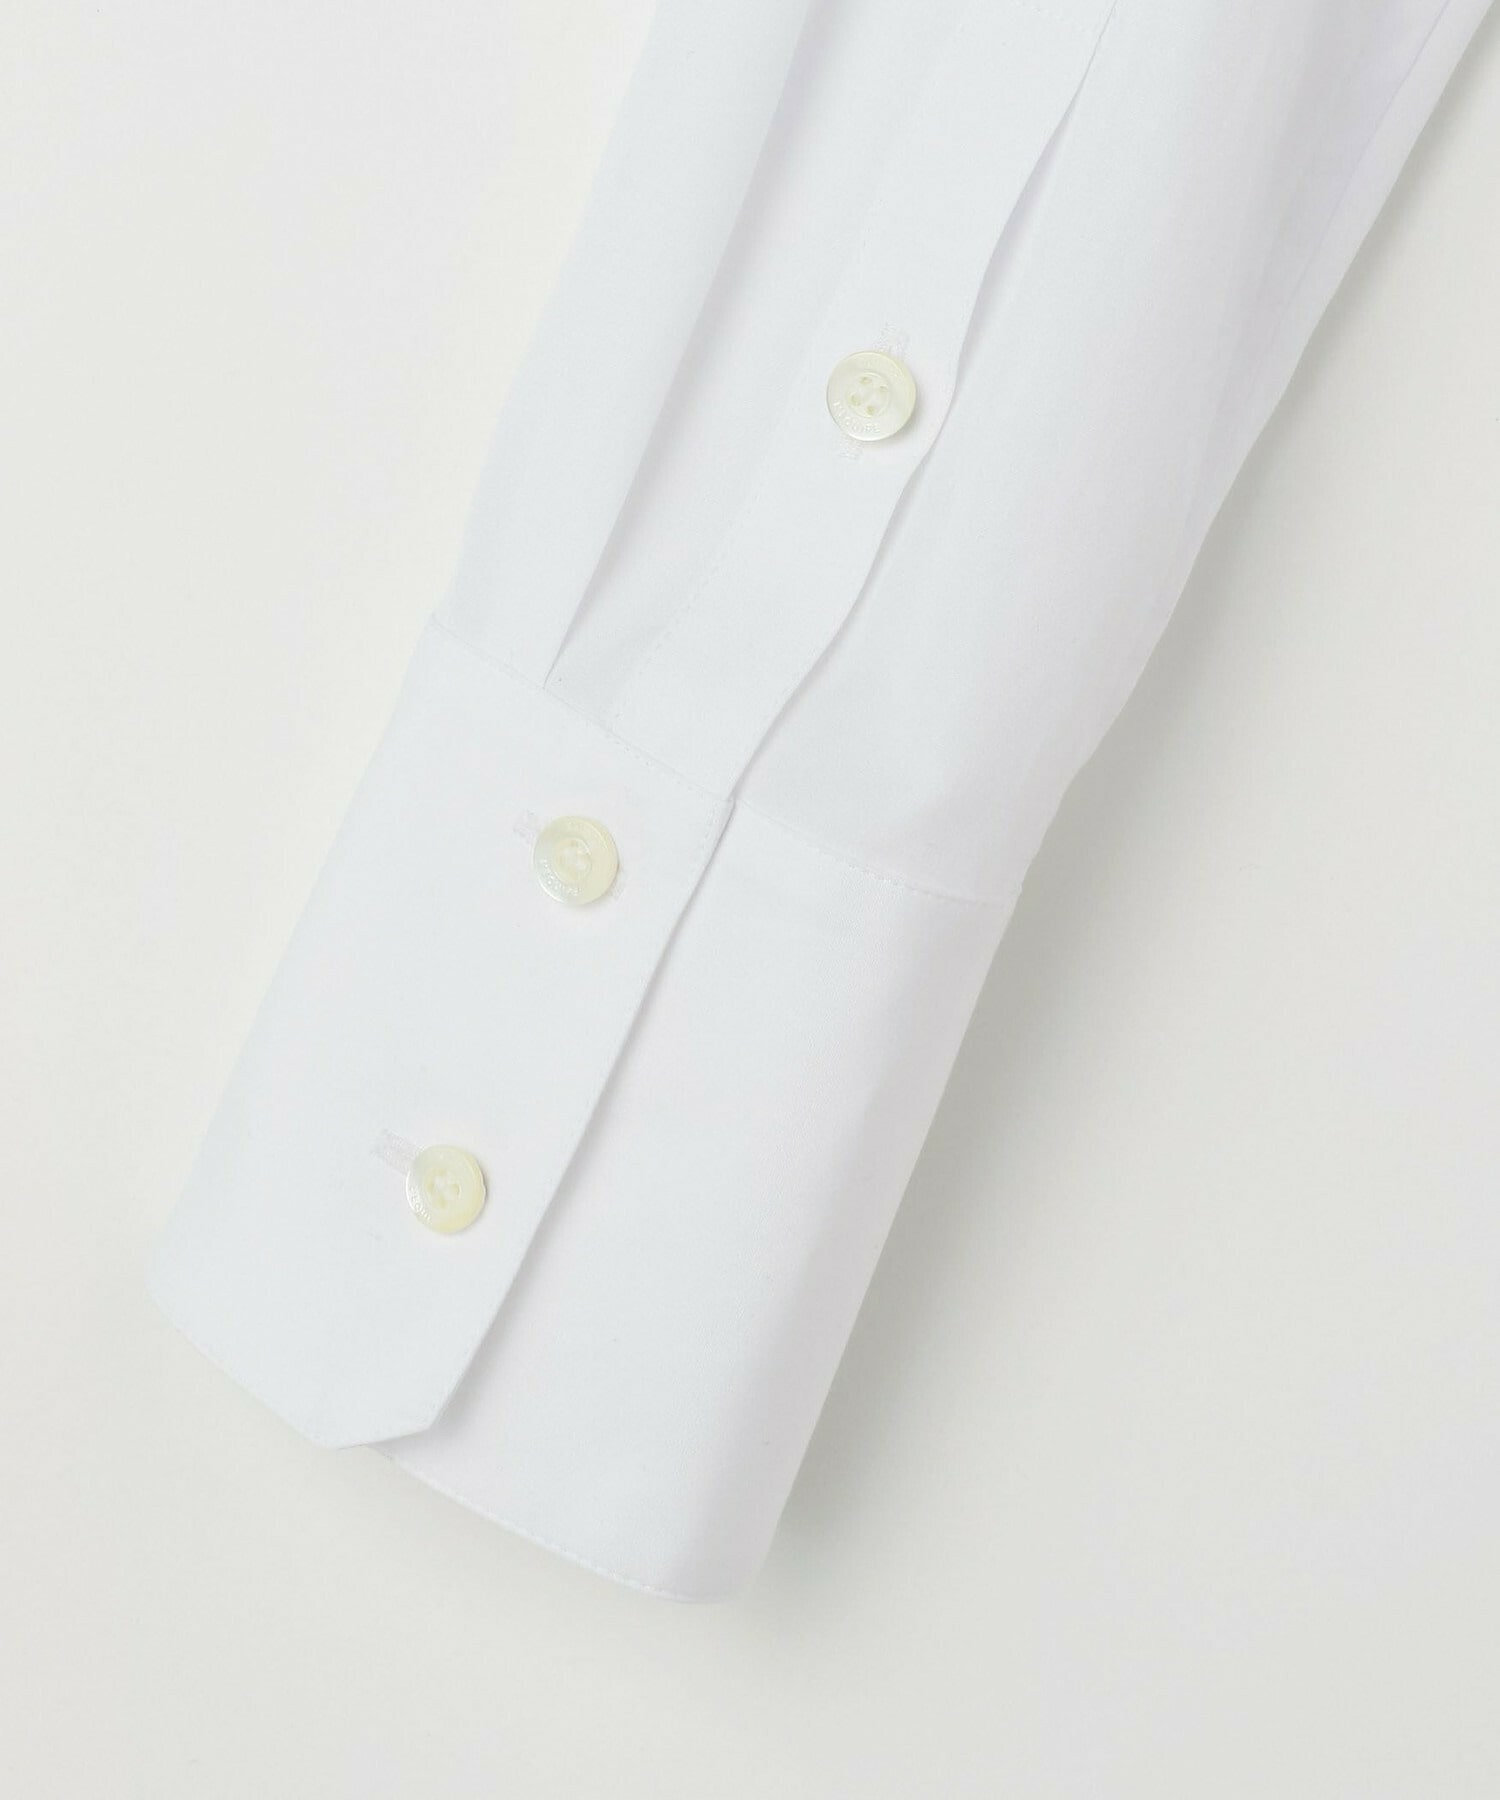 【L'EQUIPE】「クロワッサン」no.1055掲載/120/2ブロードシャツ 詳細画像 ホワイト 5